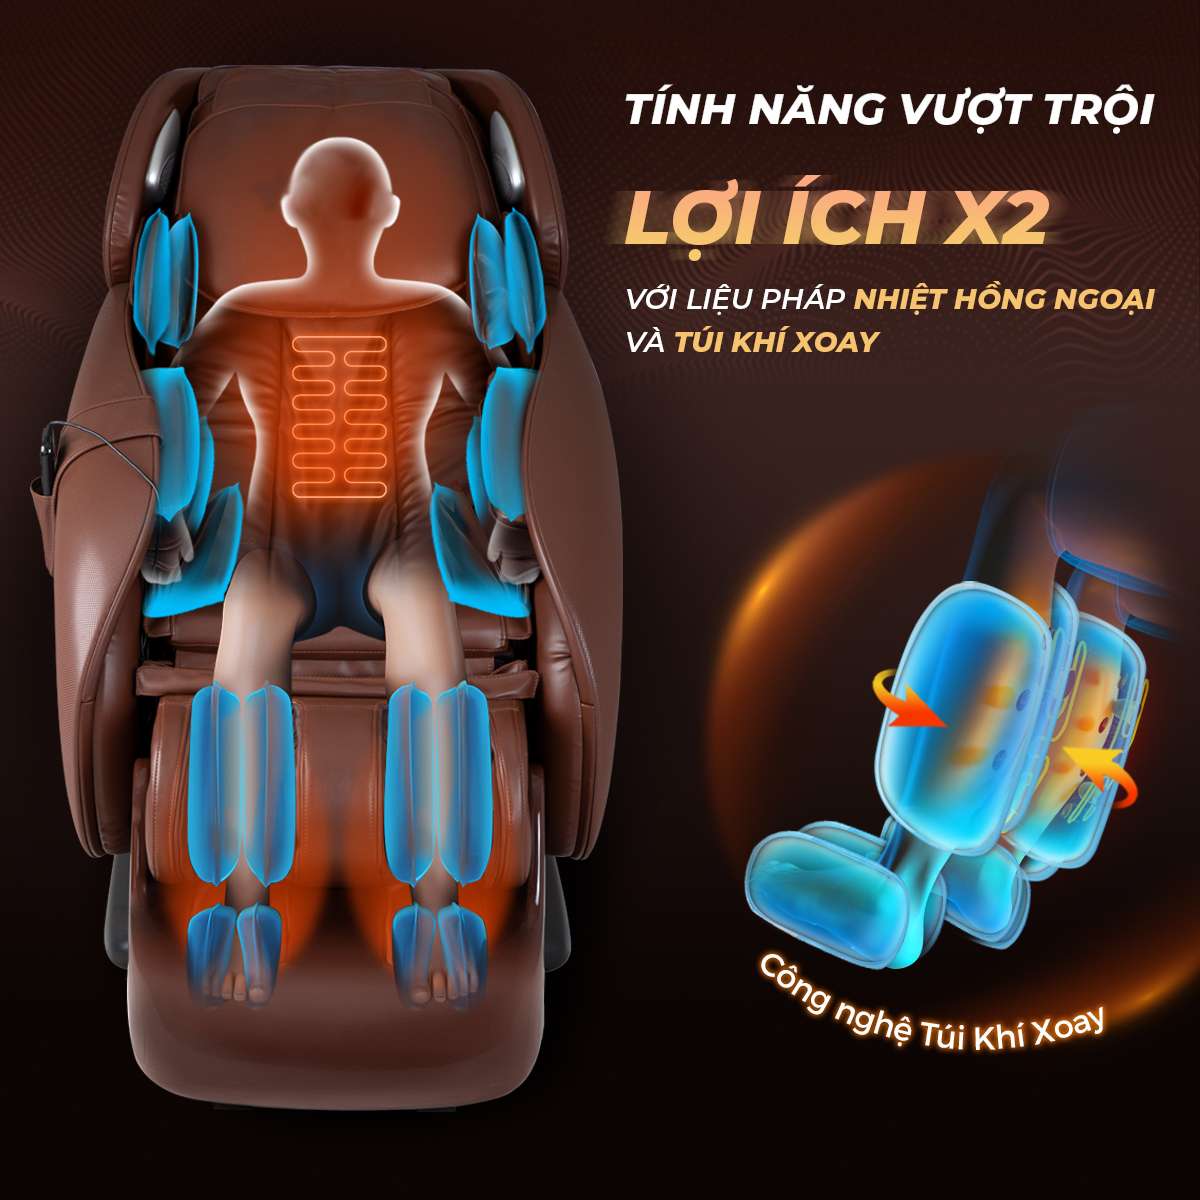 AVA - Điểm mua ghế massage ở Sơn La chính hãng, giá rẻ nhất